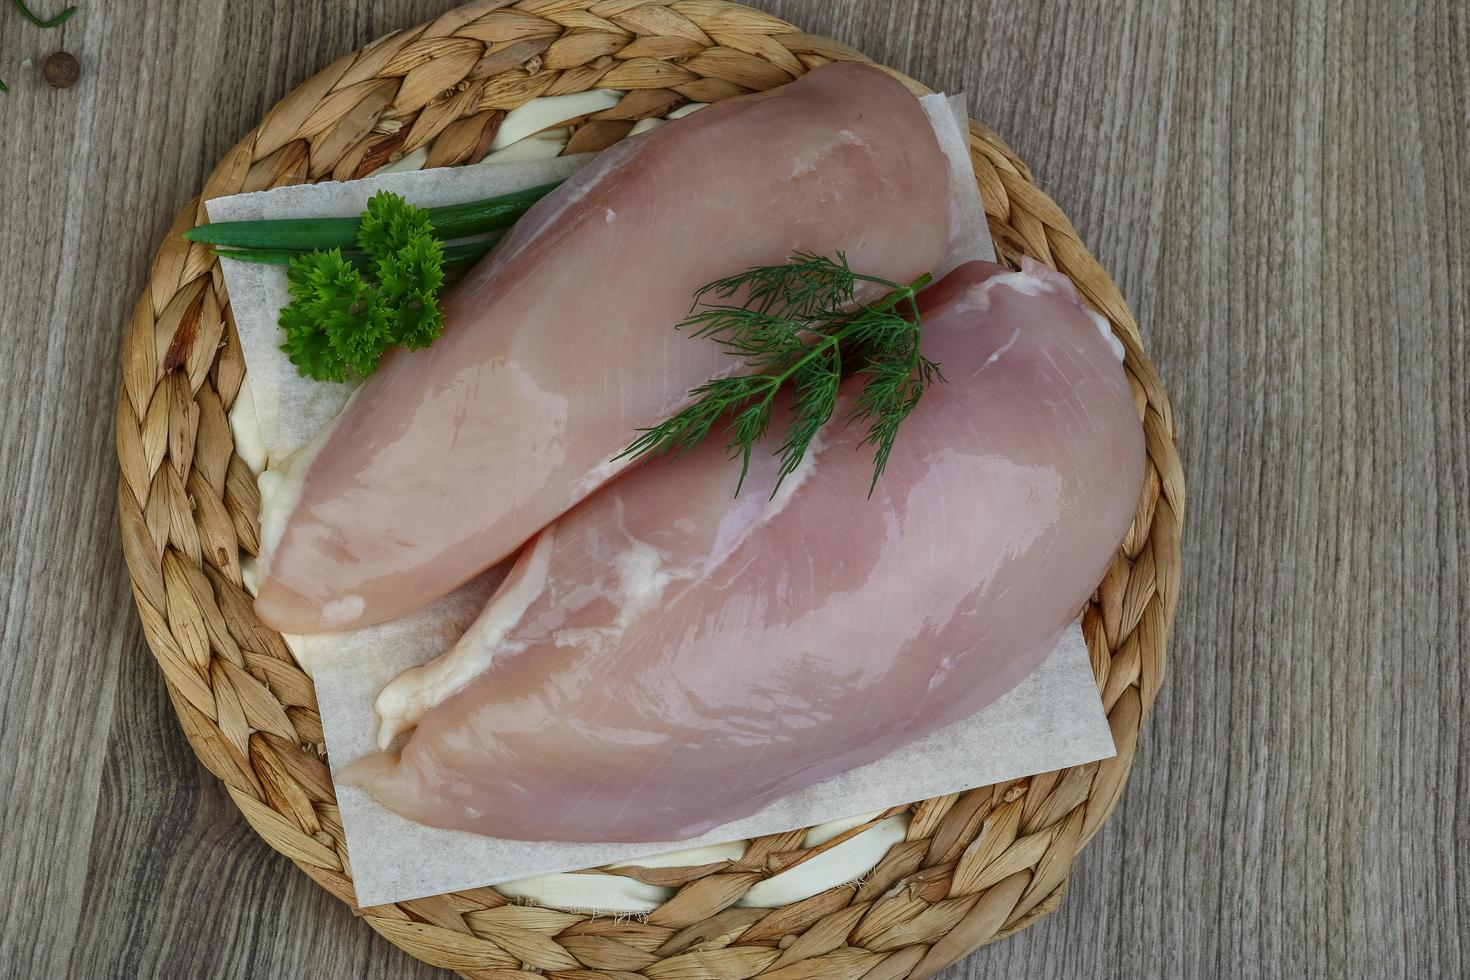 Raw chicken breast photo